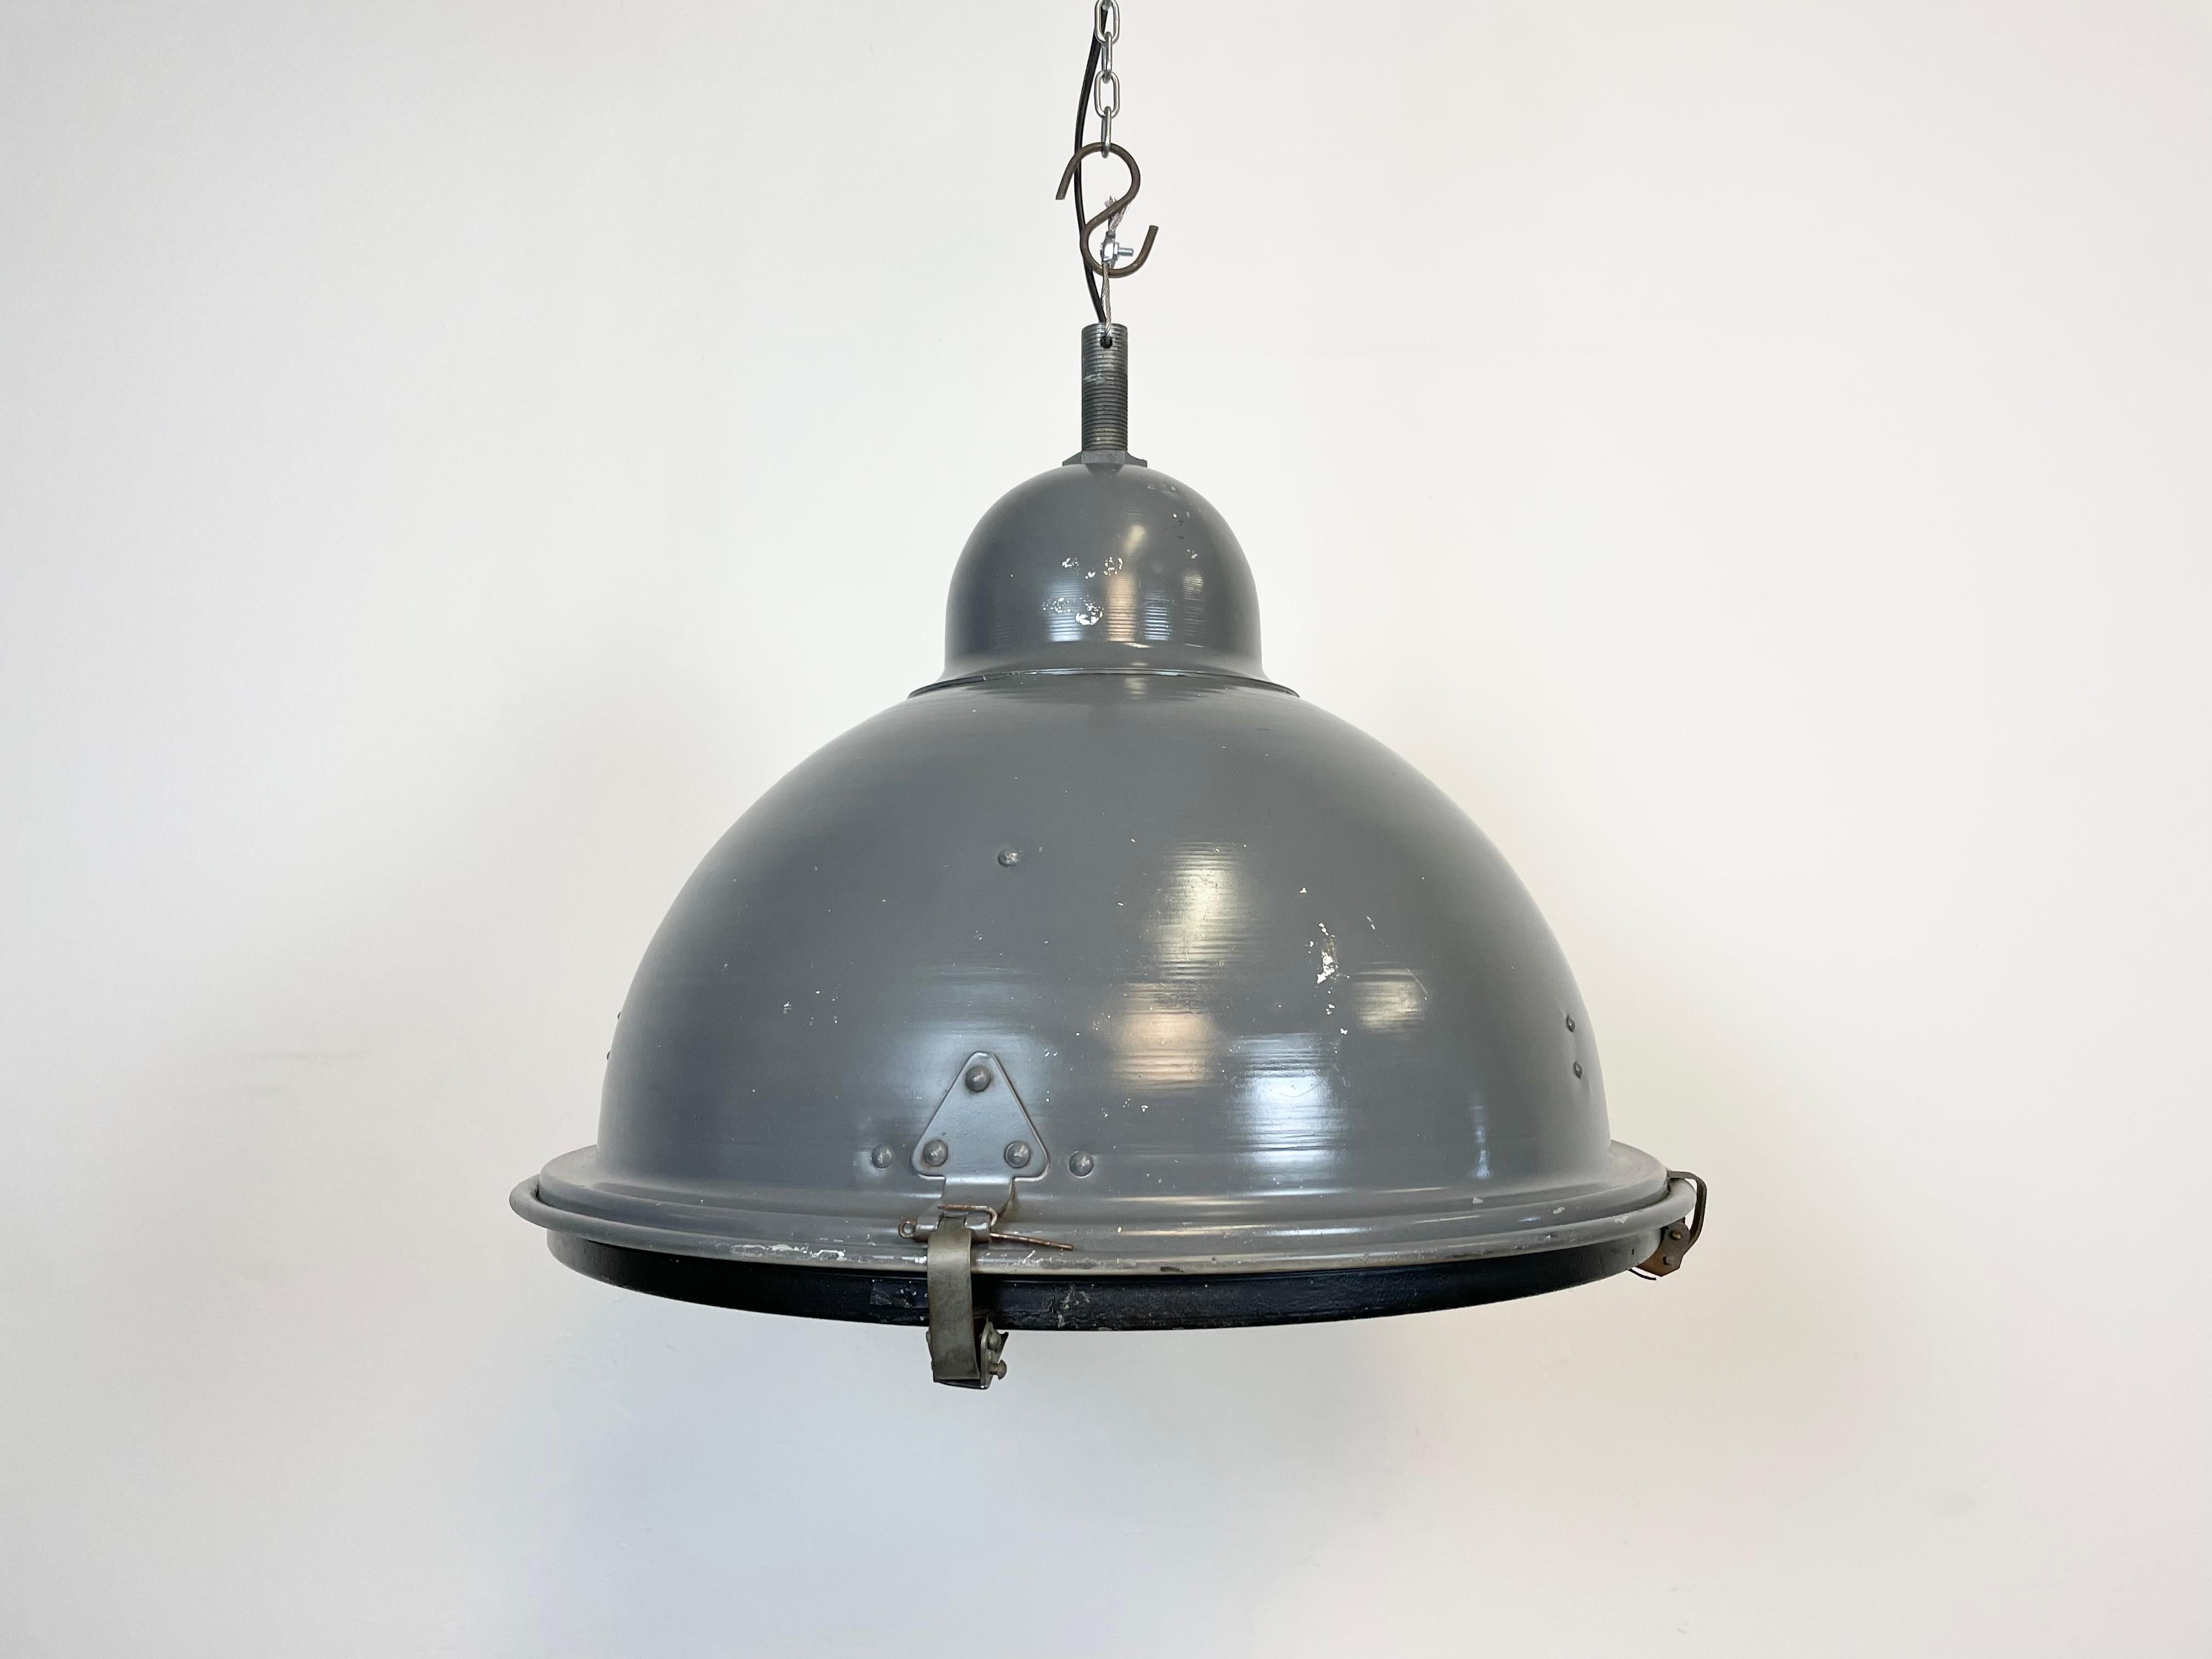 Vieille lampe pendante en aluminium de fabrication industrielle grise, fabriquée en Hongrie dans les années 1970. Il se compose d'un corps en aluminium, d'un plateau en fer et d'un couvercle en verre transparent. La douille nécessite des ampoules E